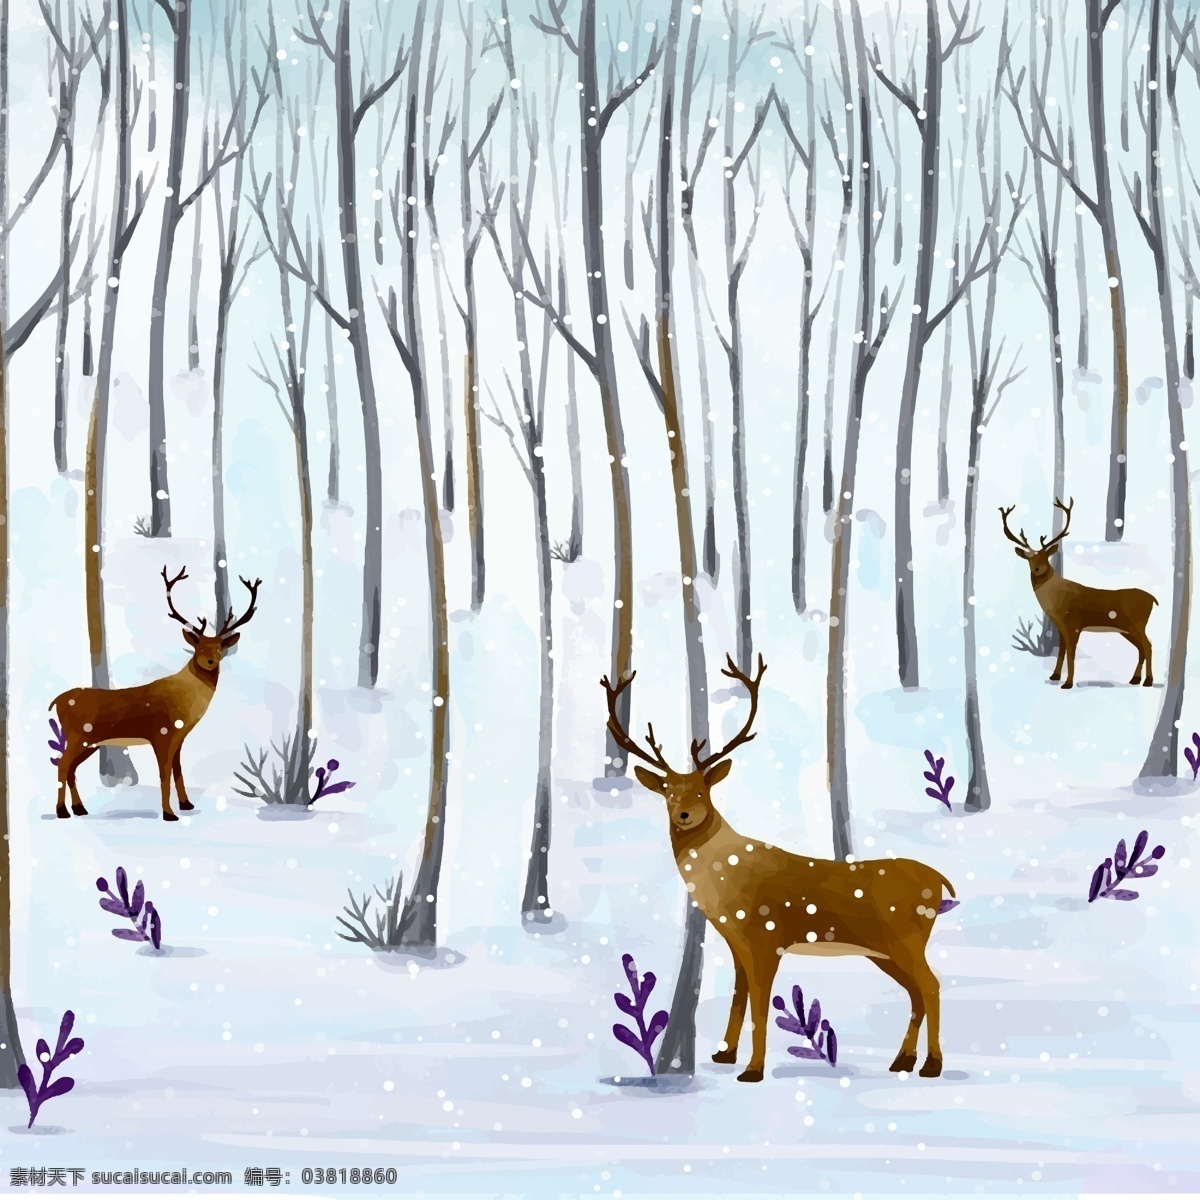 水彩 绘 森林 里 只 驯鹿 矢量图 树林 树木 雪地 动物 冬季 文化艺术 节日庆祝